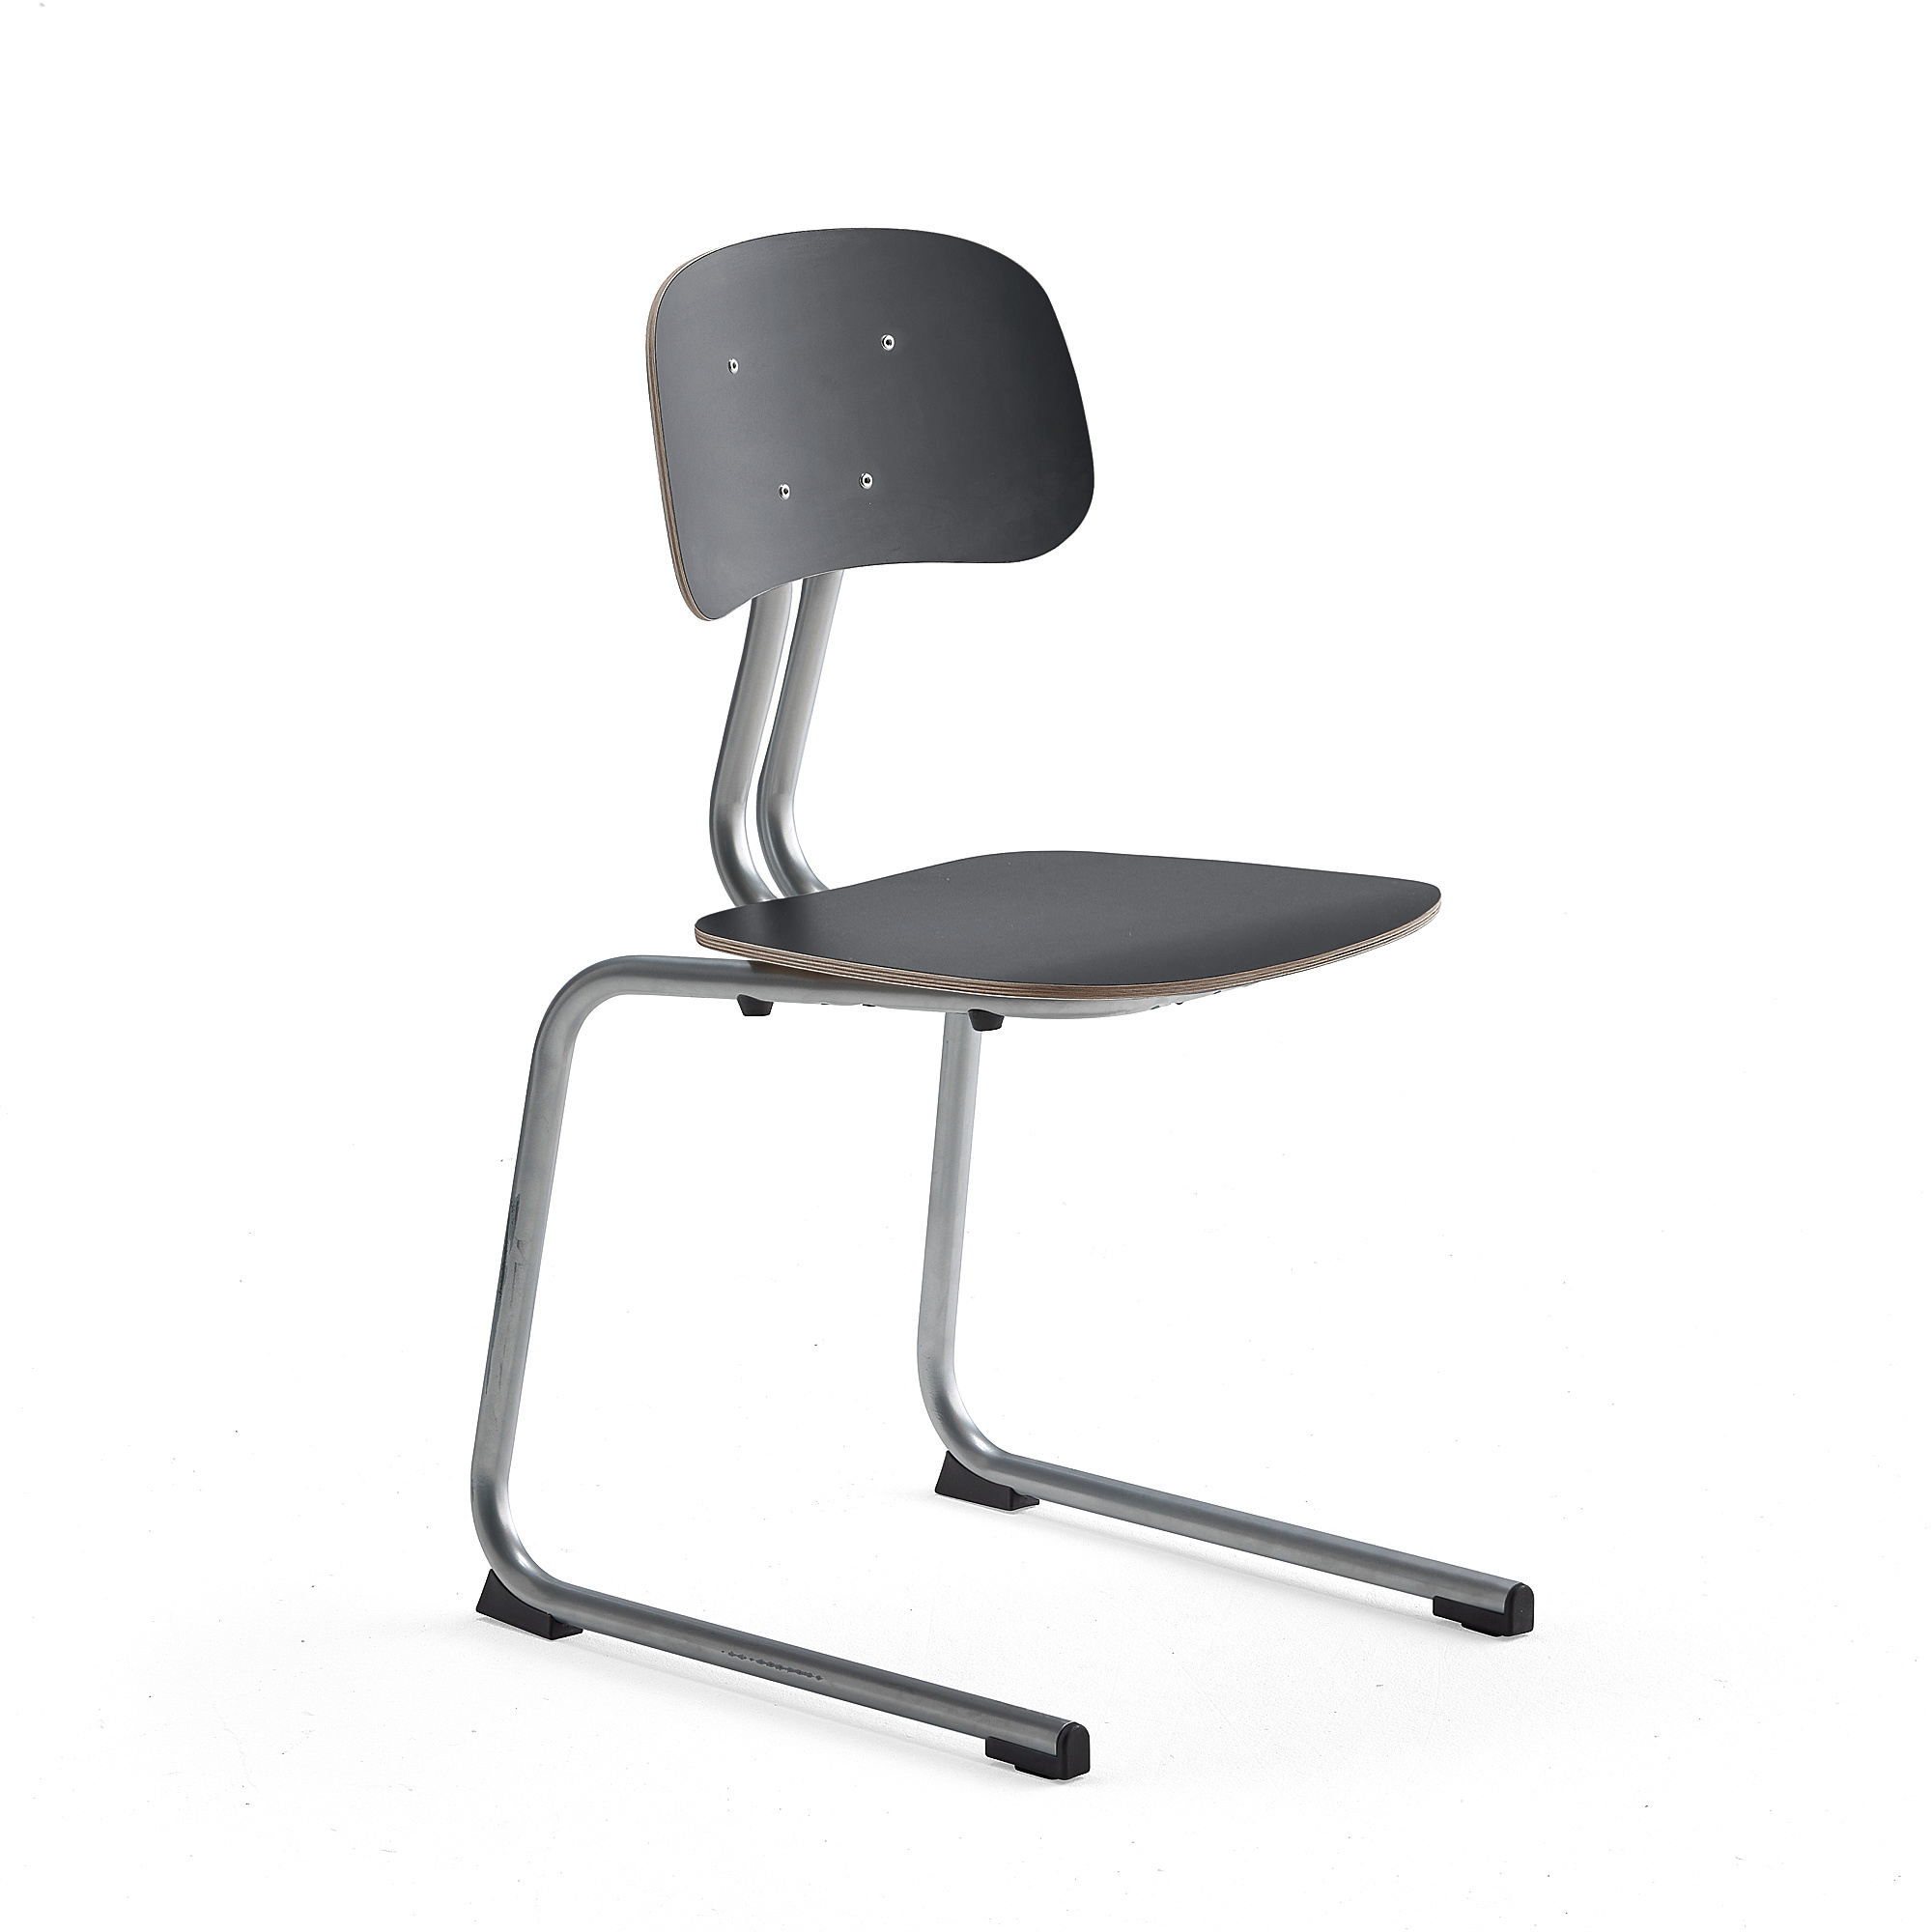 Školní židle YNGVE, ližinová podnož, výška 460 mm, stříbrná/antracitově šedá